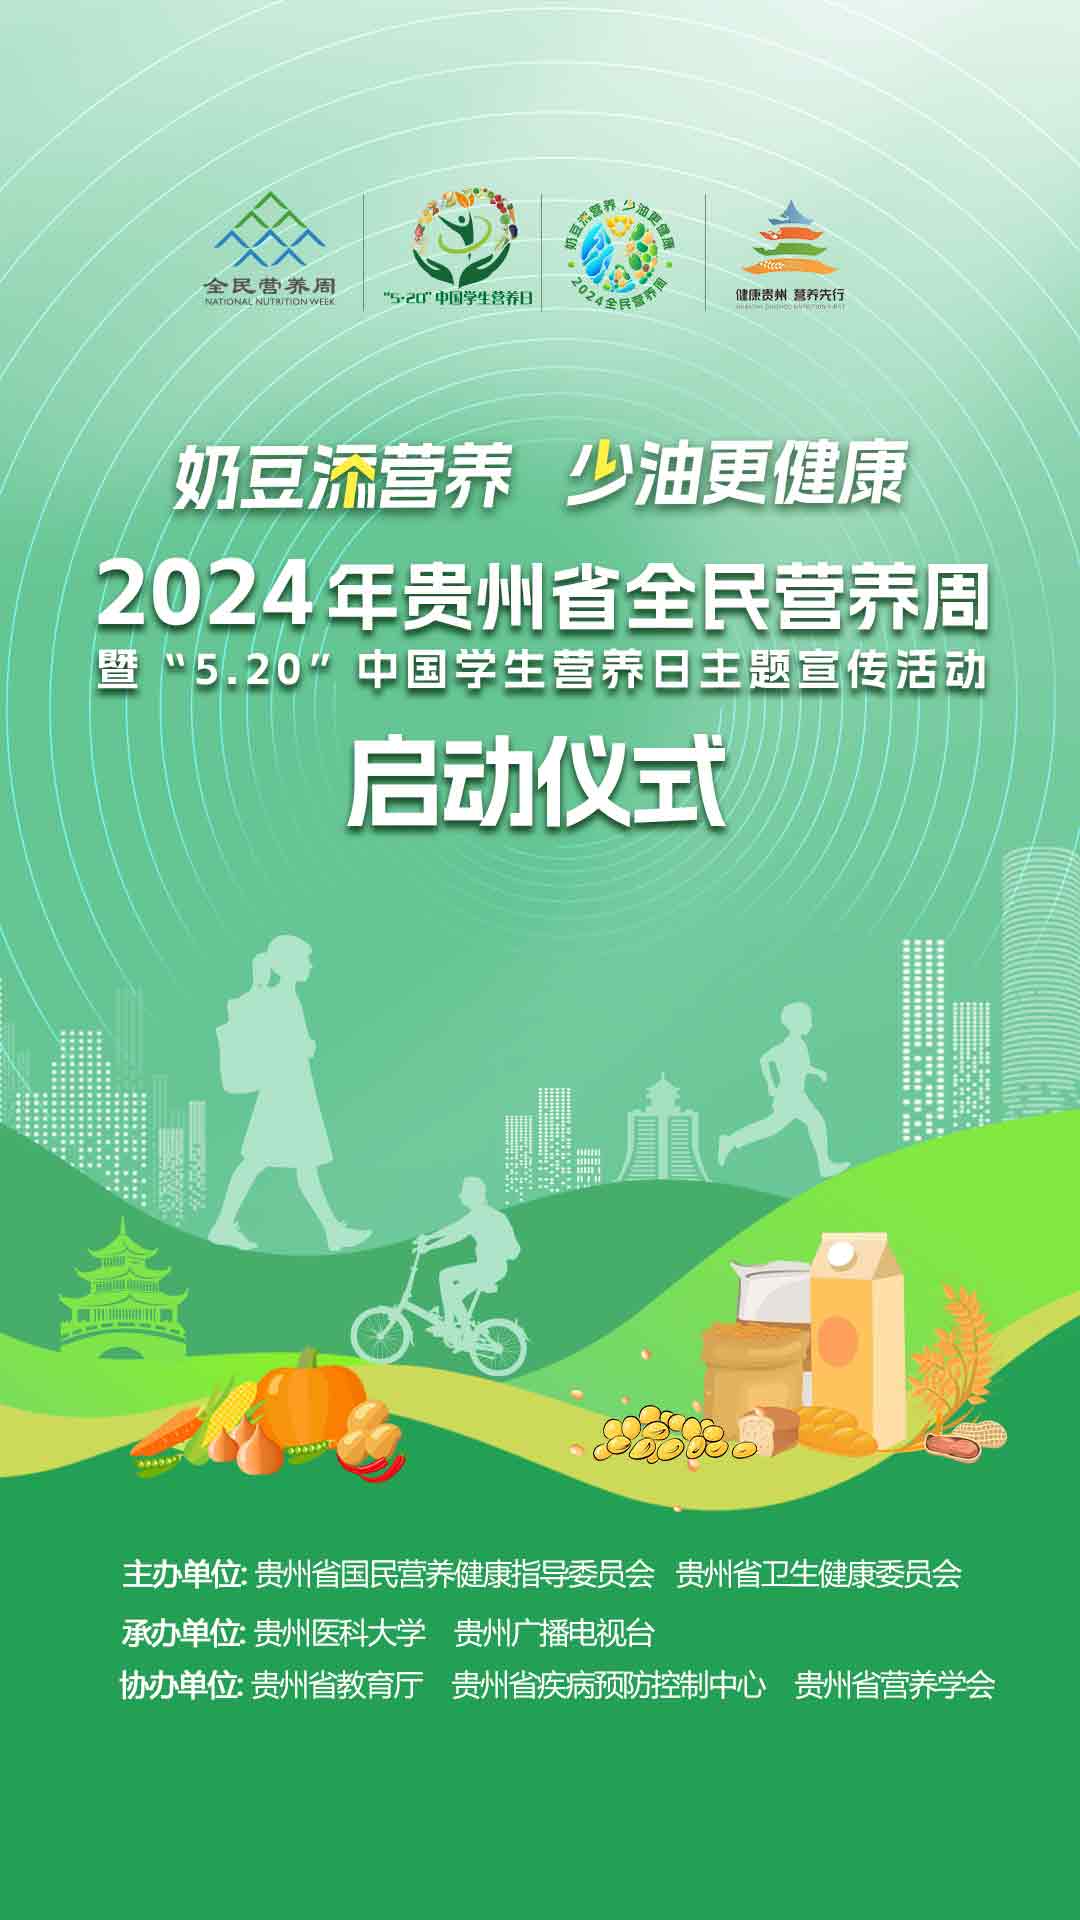 2024 年贵州省全民营养周走进高校暨5 · 20中国学生营养日主题宣传